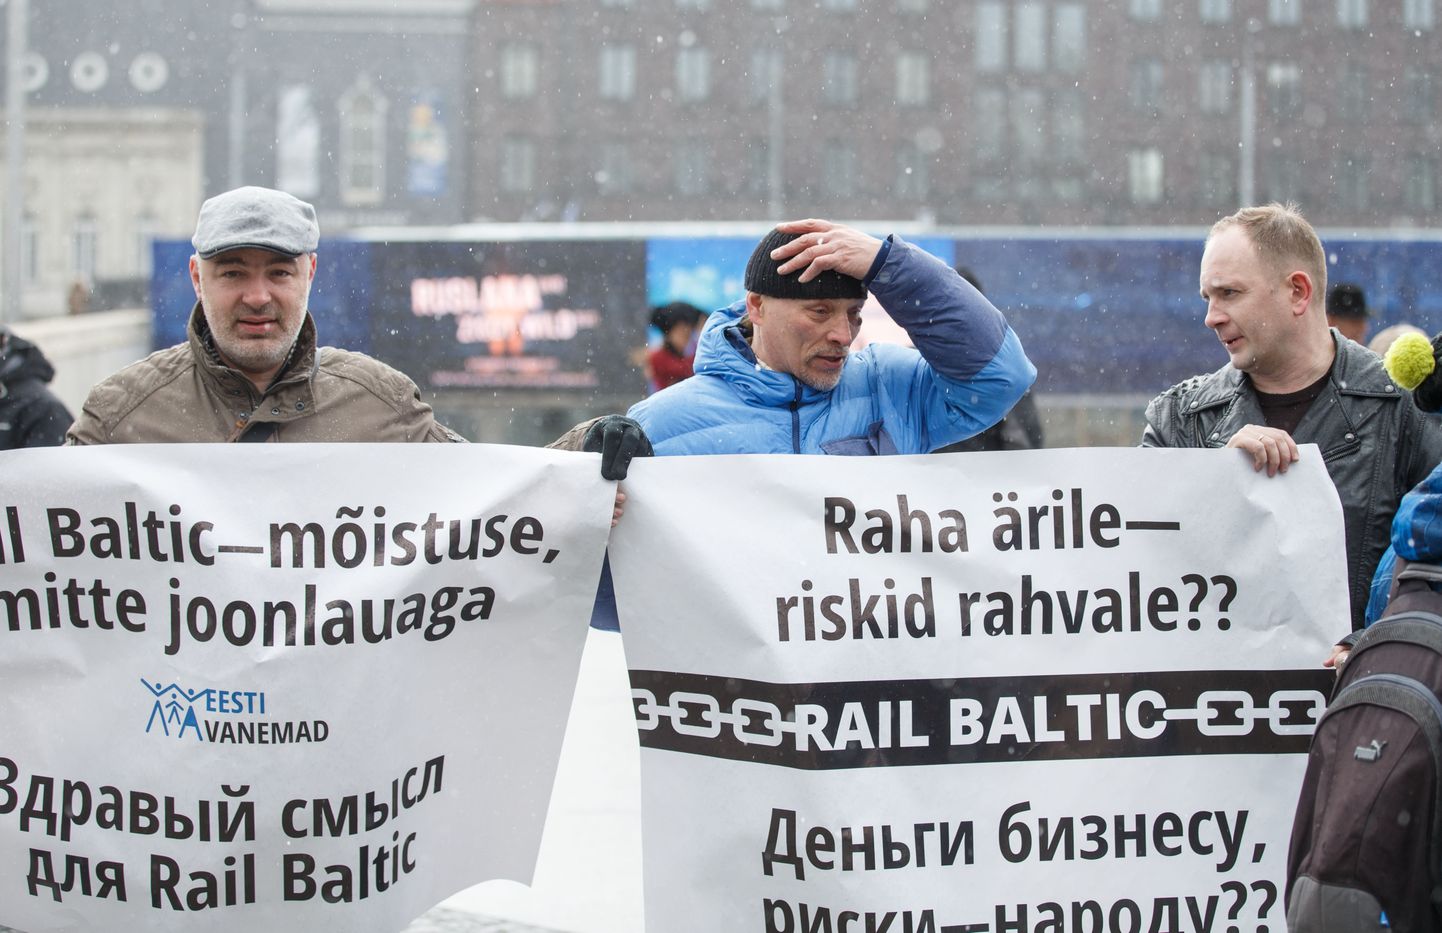 Rail Balticu vastane meeleavaldus Vabaduse väljakul